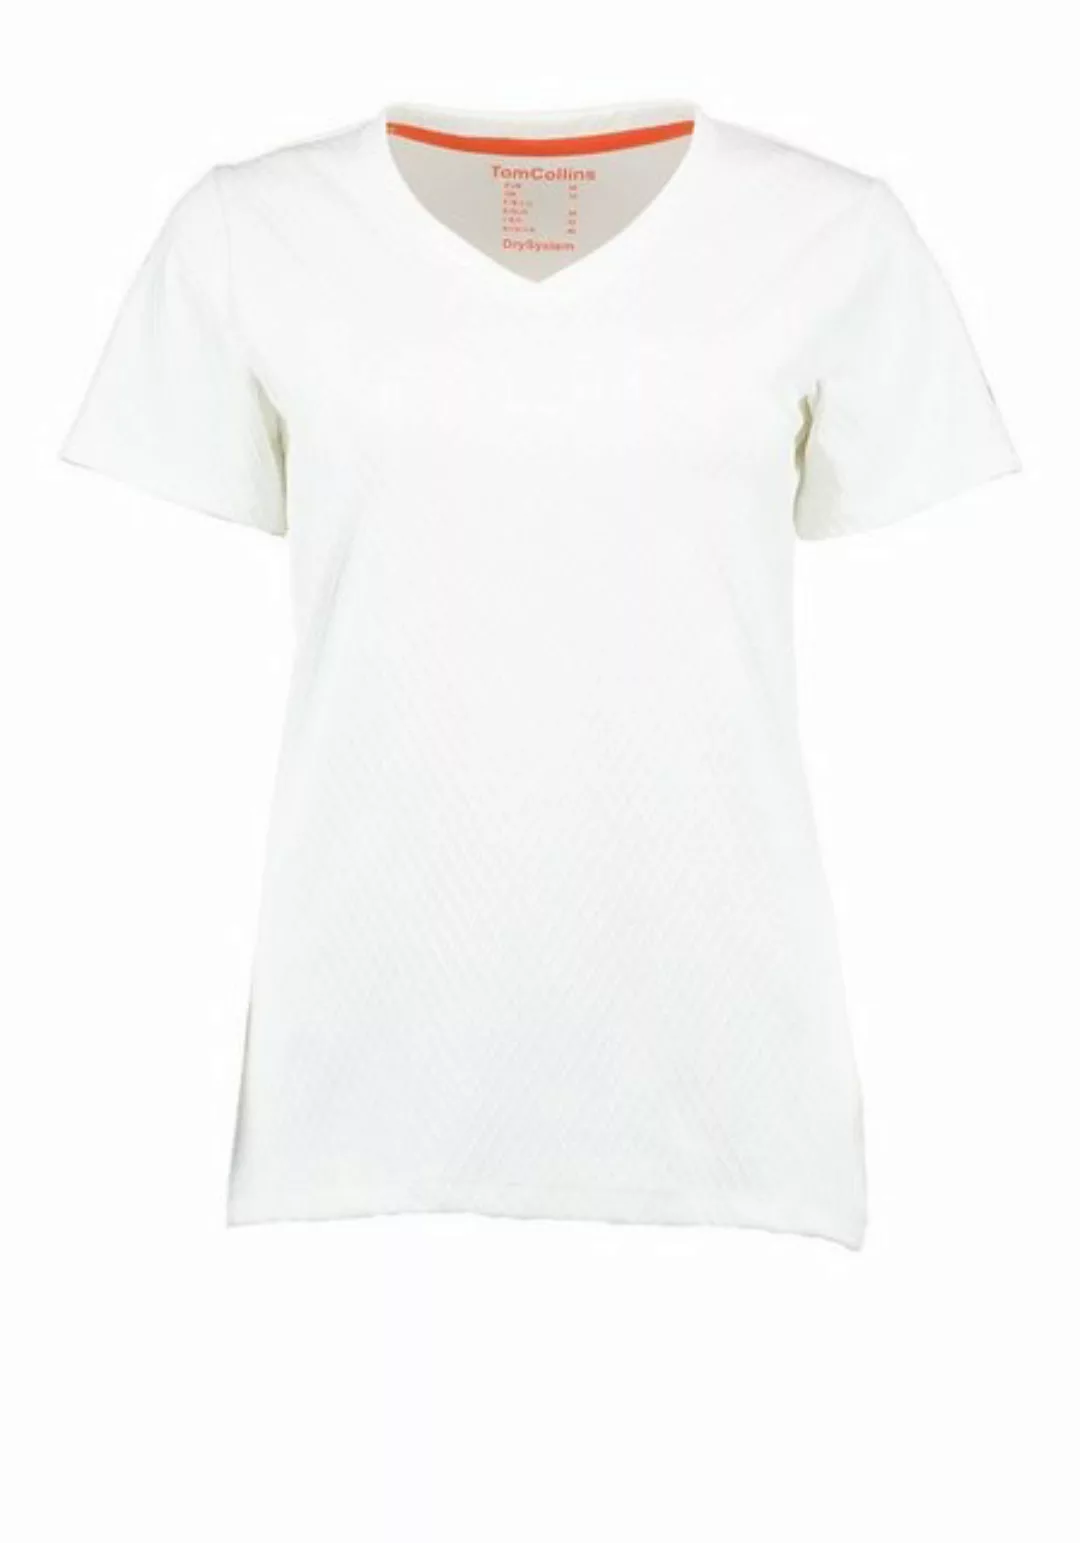 Tom Collins T-Shirt Exubi Damen Outdoorshirt mit V-Ausschnitt günstig online kaufen